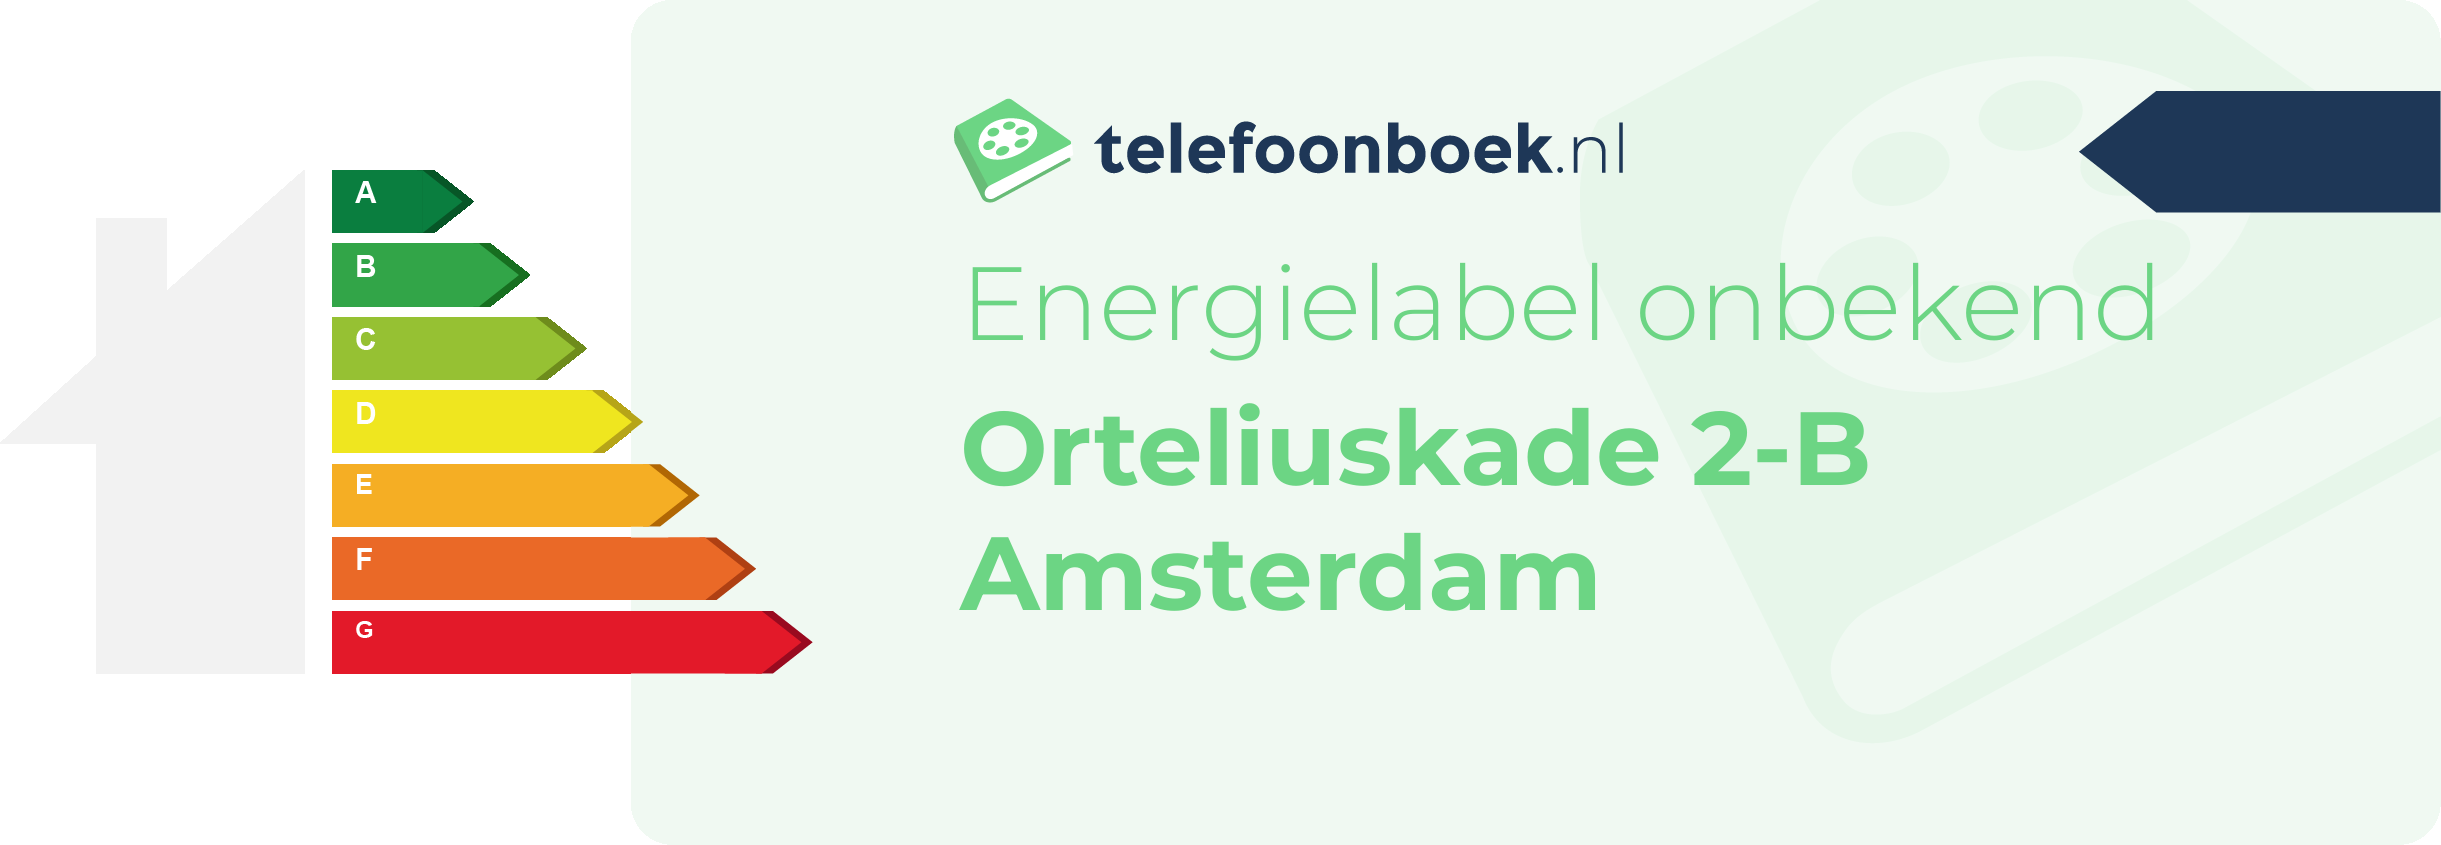 Energielabel Orteliuskade 2-B Amsterdam